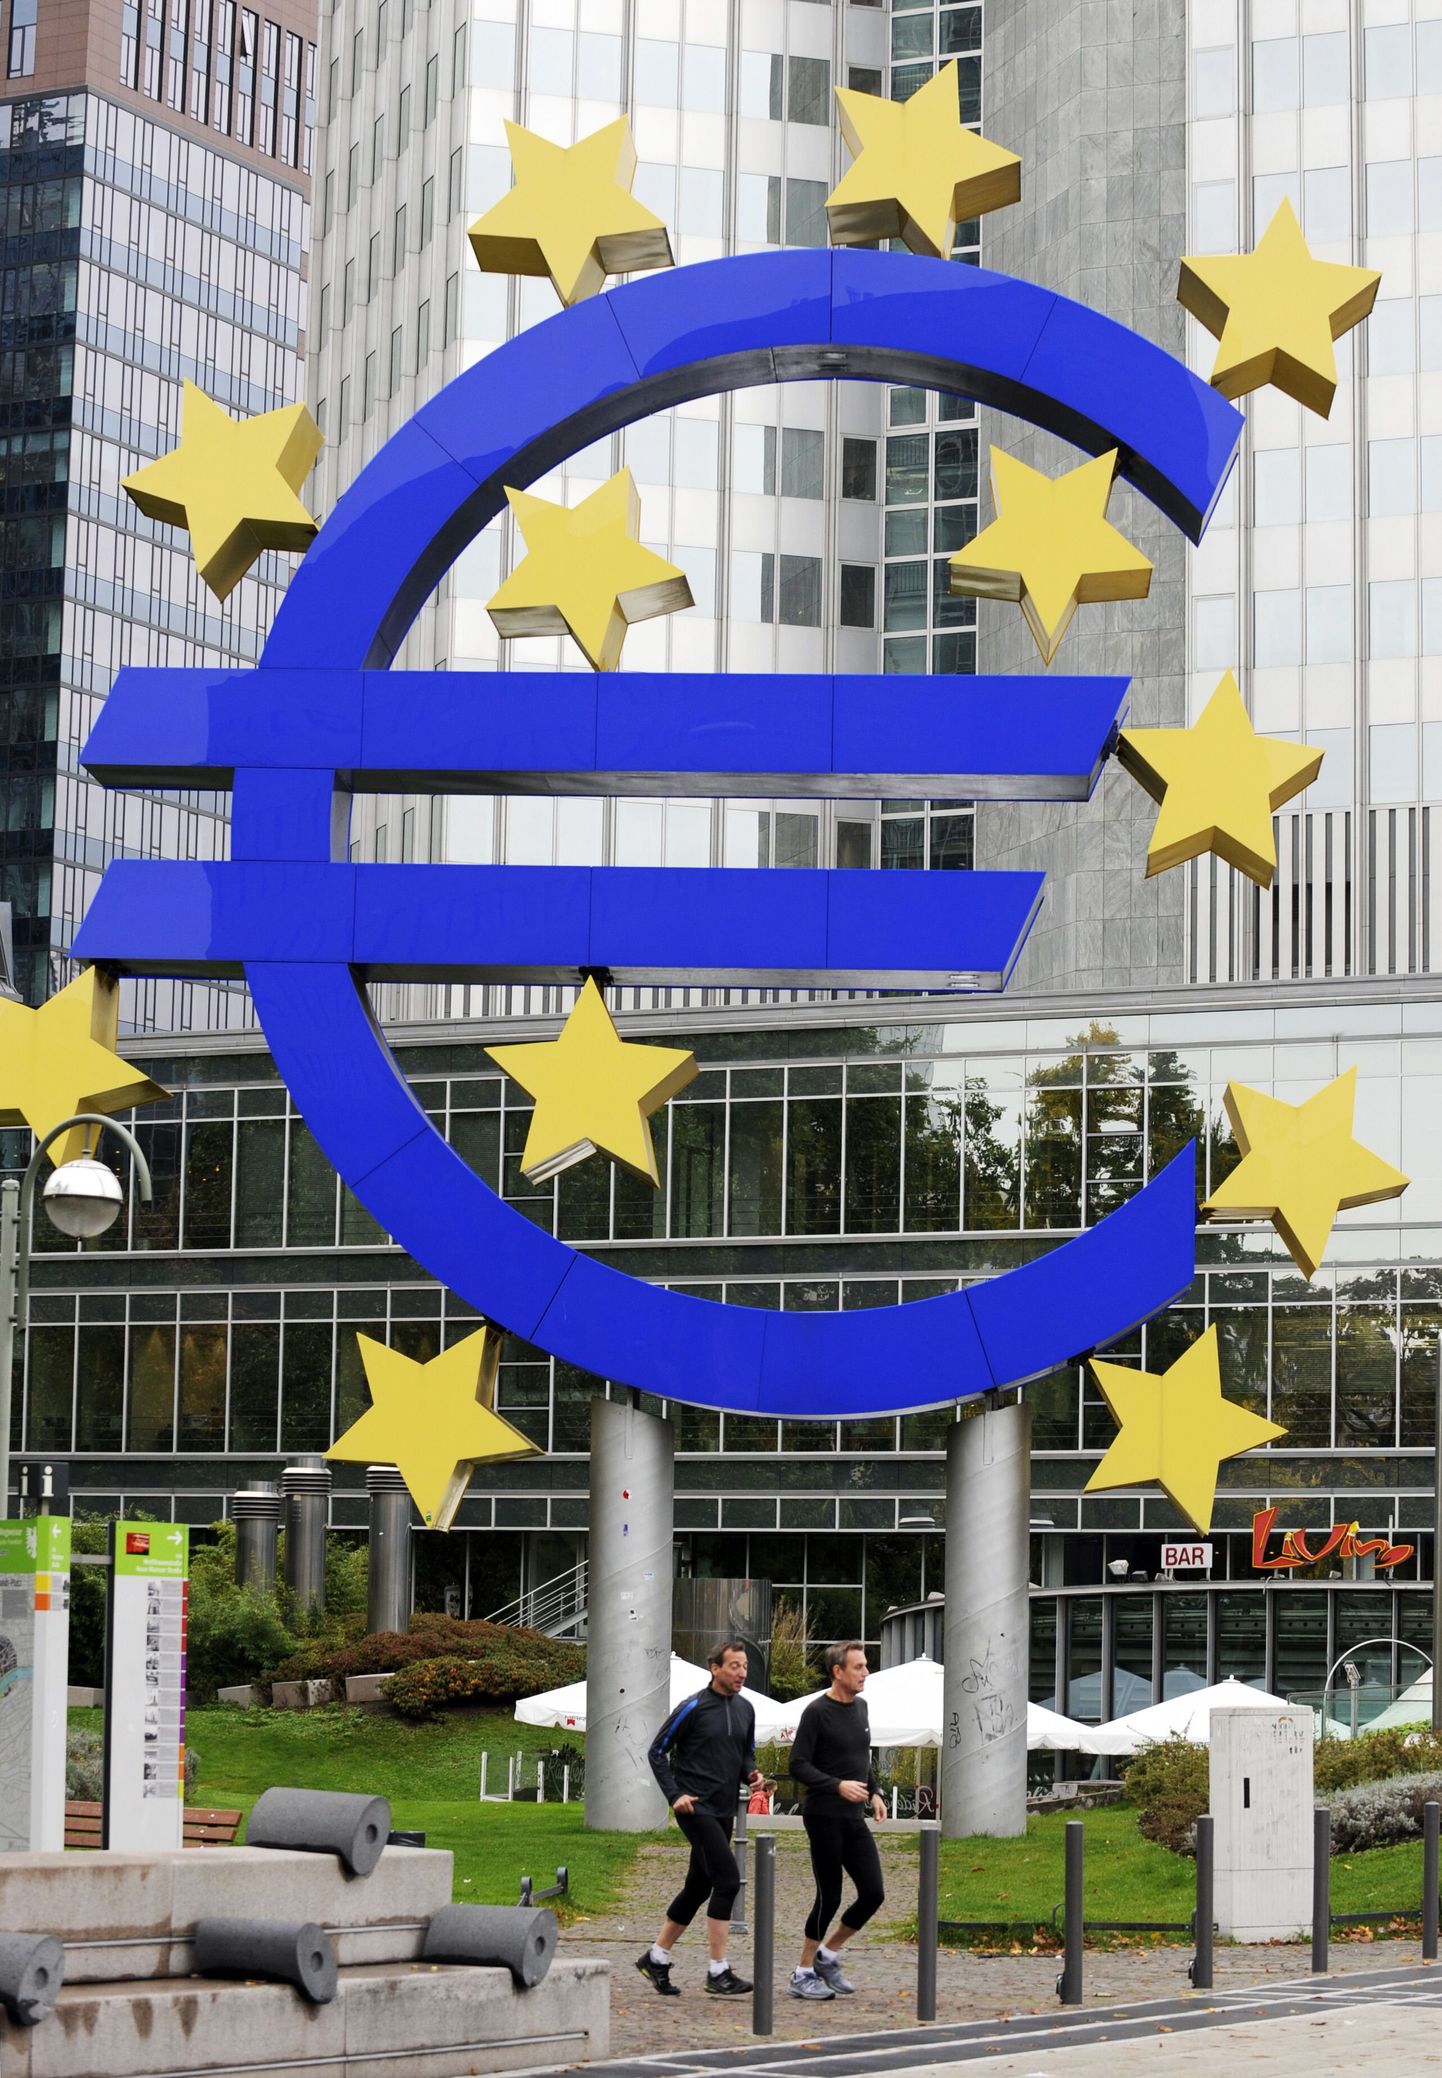 Euroopa Keskpank